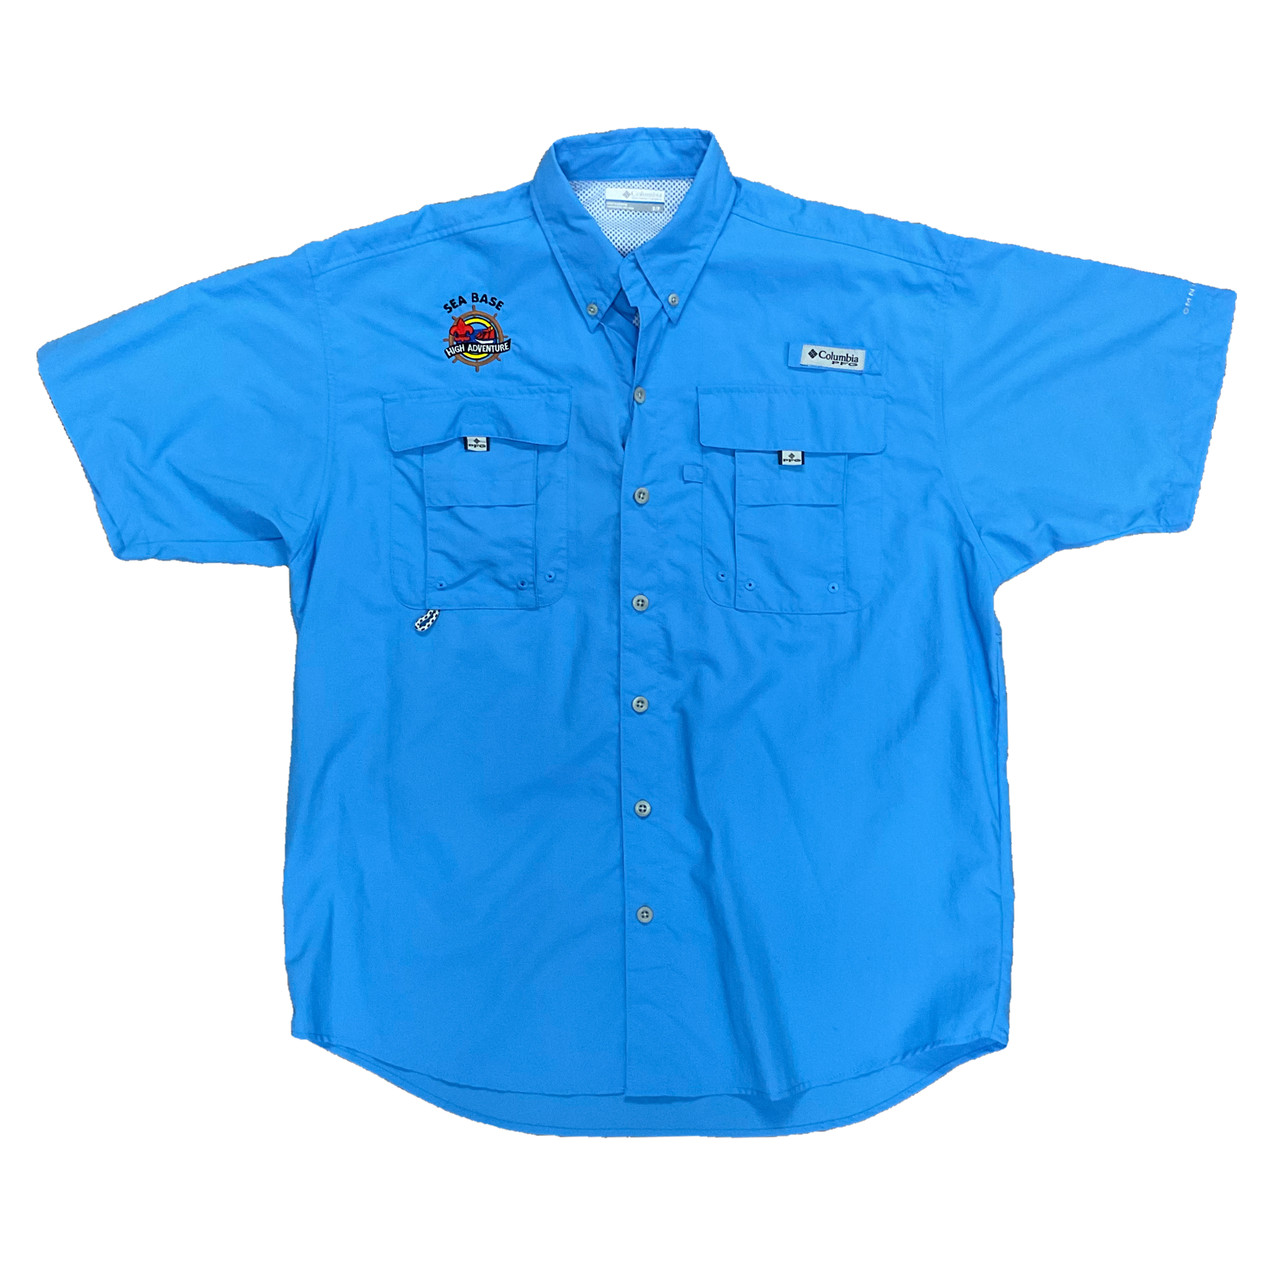 Fishing Shirt Ss 475 Columbia Sports Wear